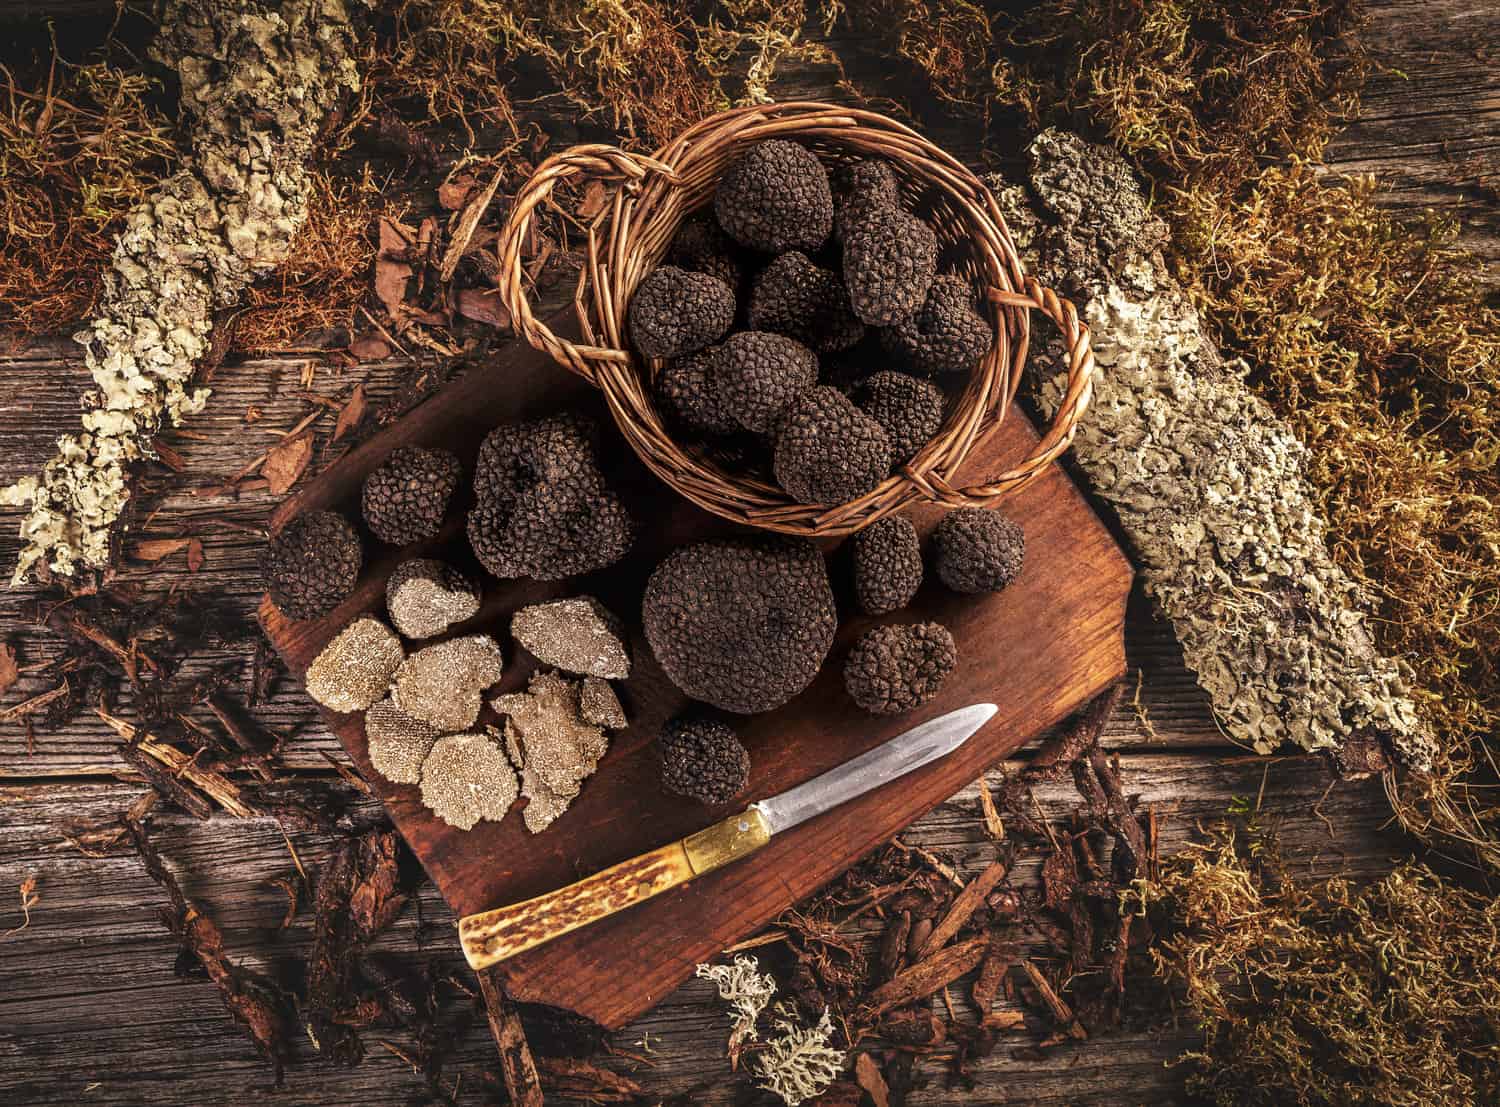 Growing truffles